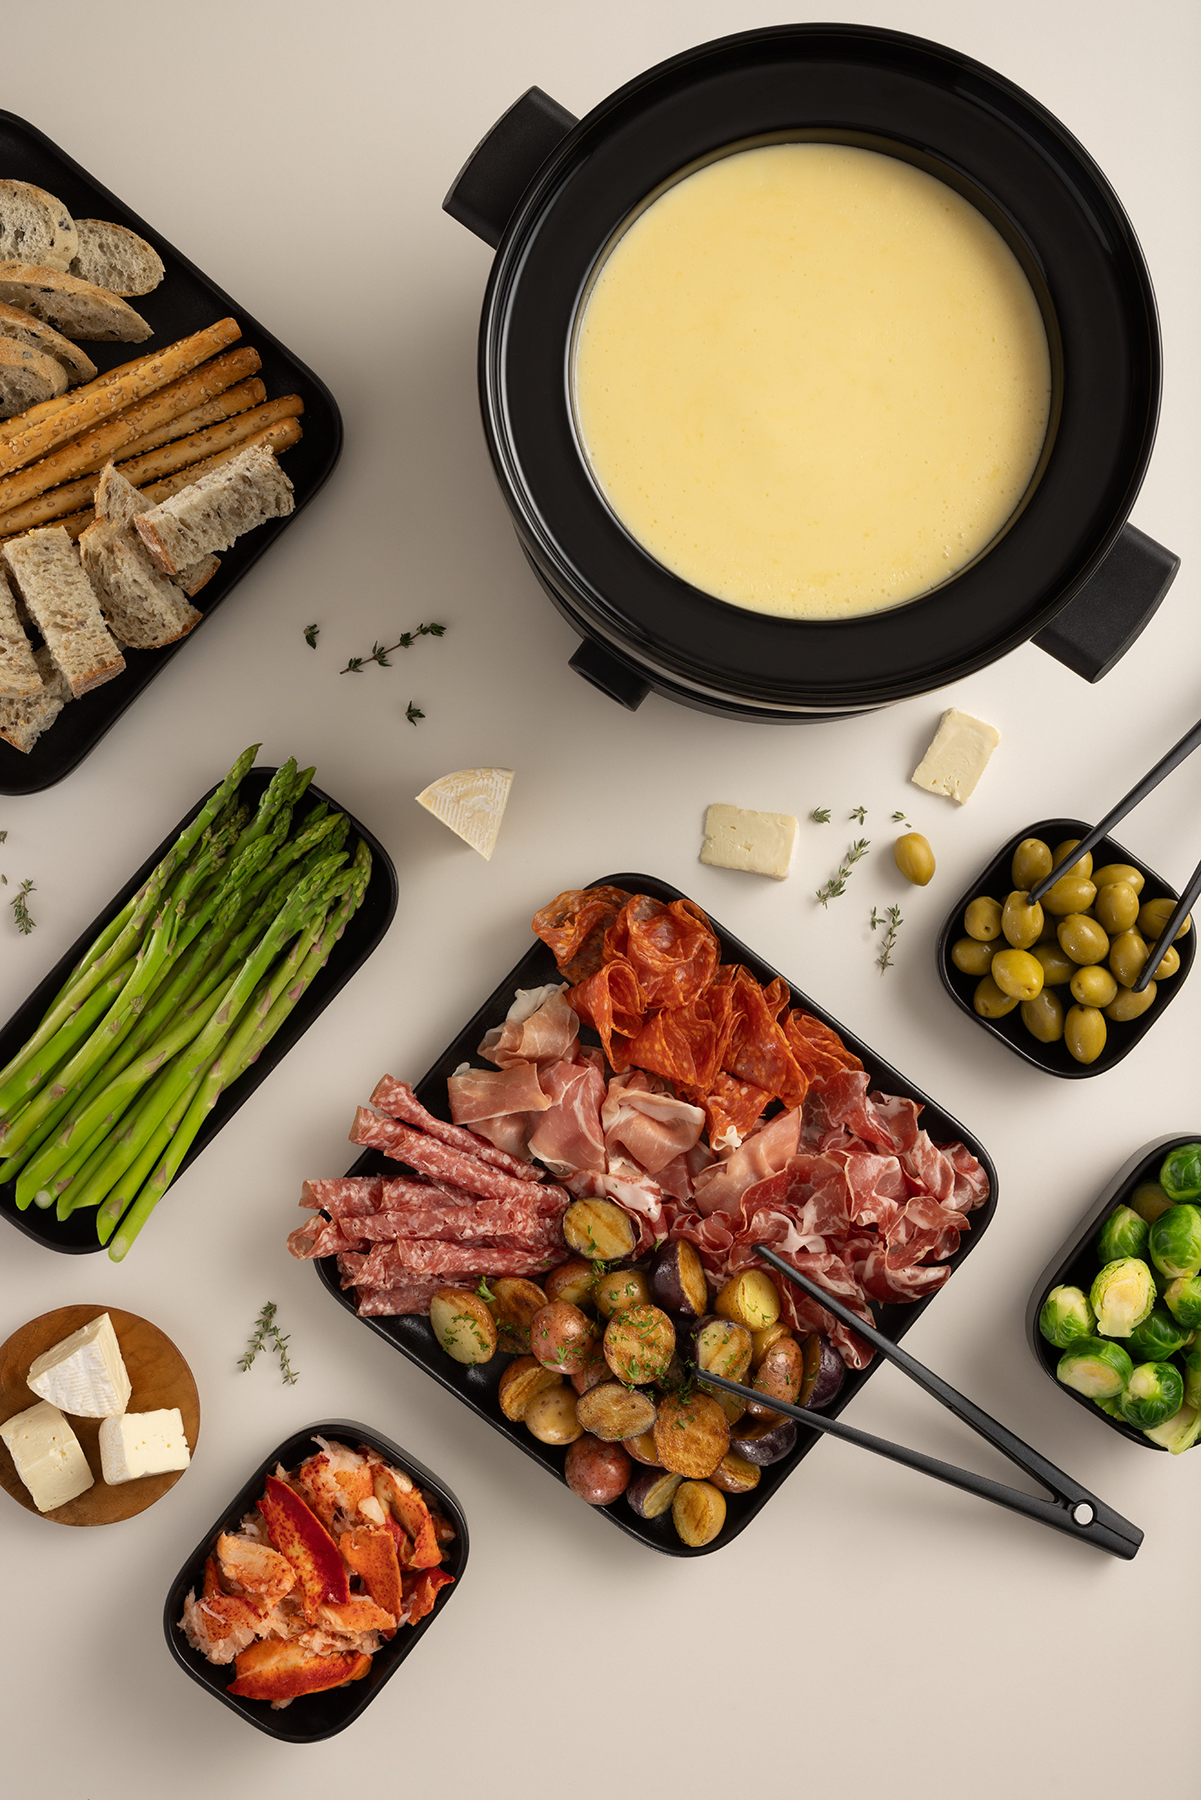 Comment bien gérer la quantité de bouillon à fondue? – Fondussimo